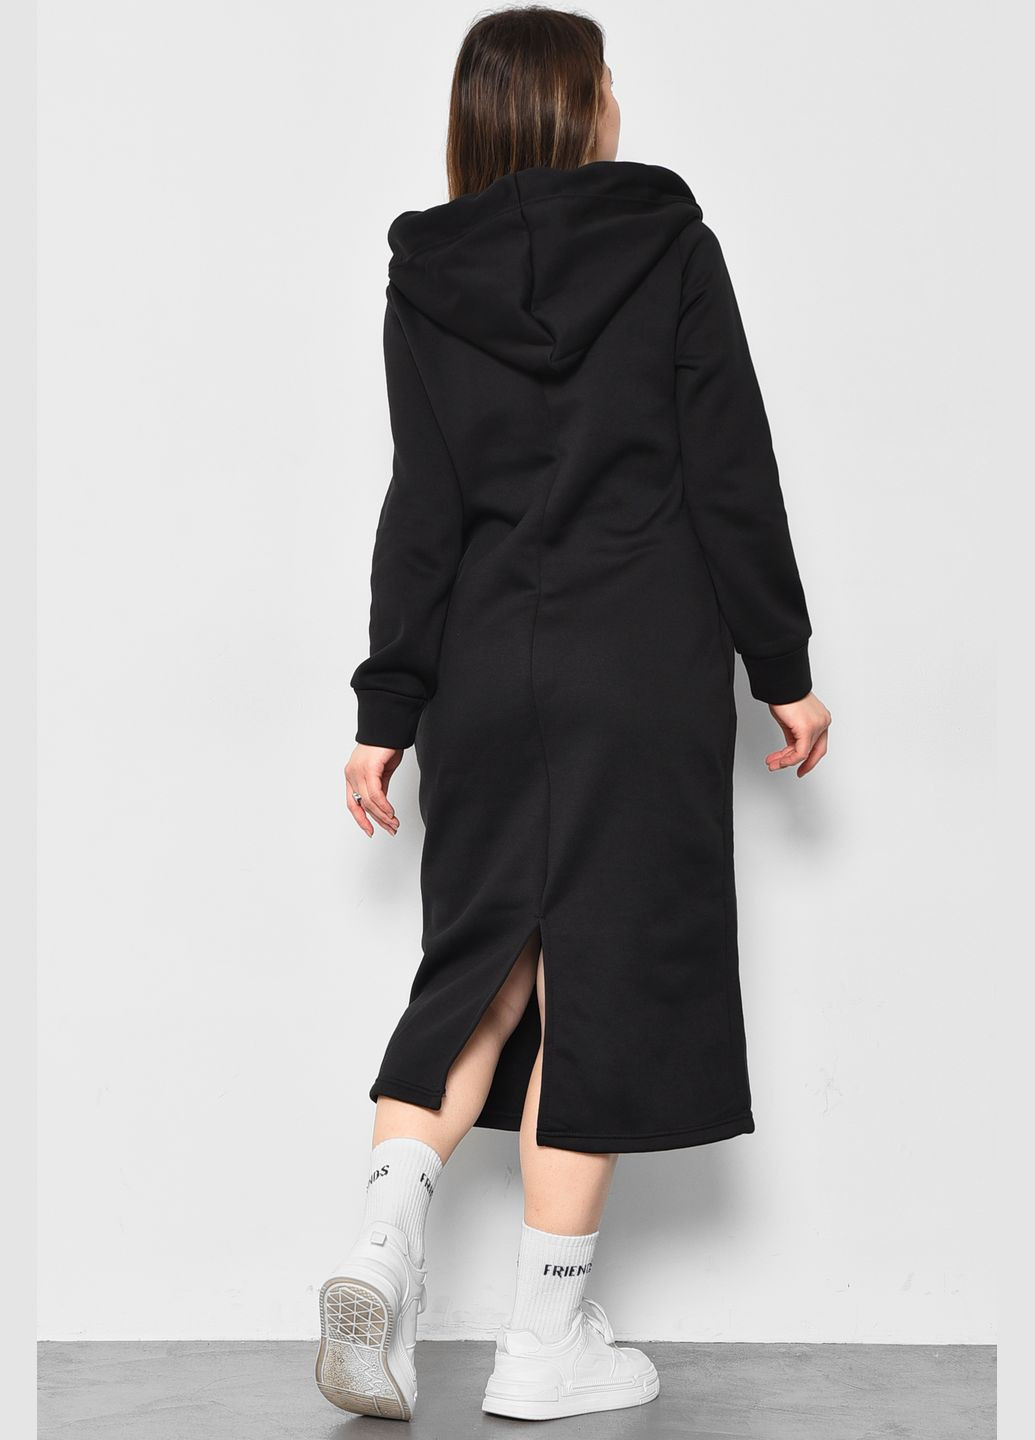 Черное кэжуал платье-худи женское полубатальное на флисе черного цвета оверсайз Let's Shop с цветочным принтом